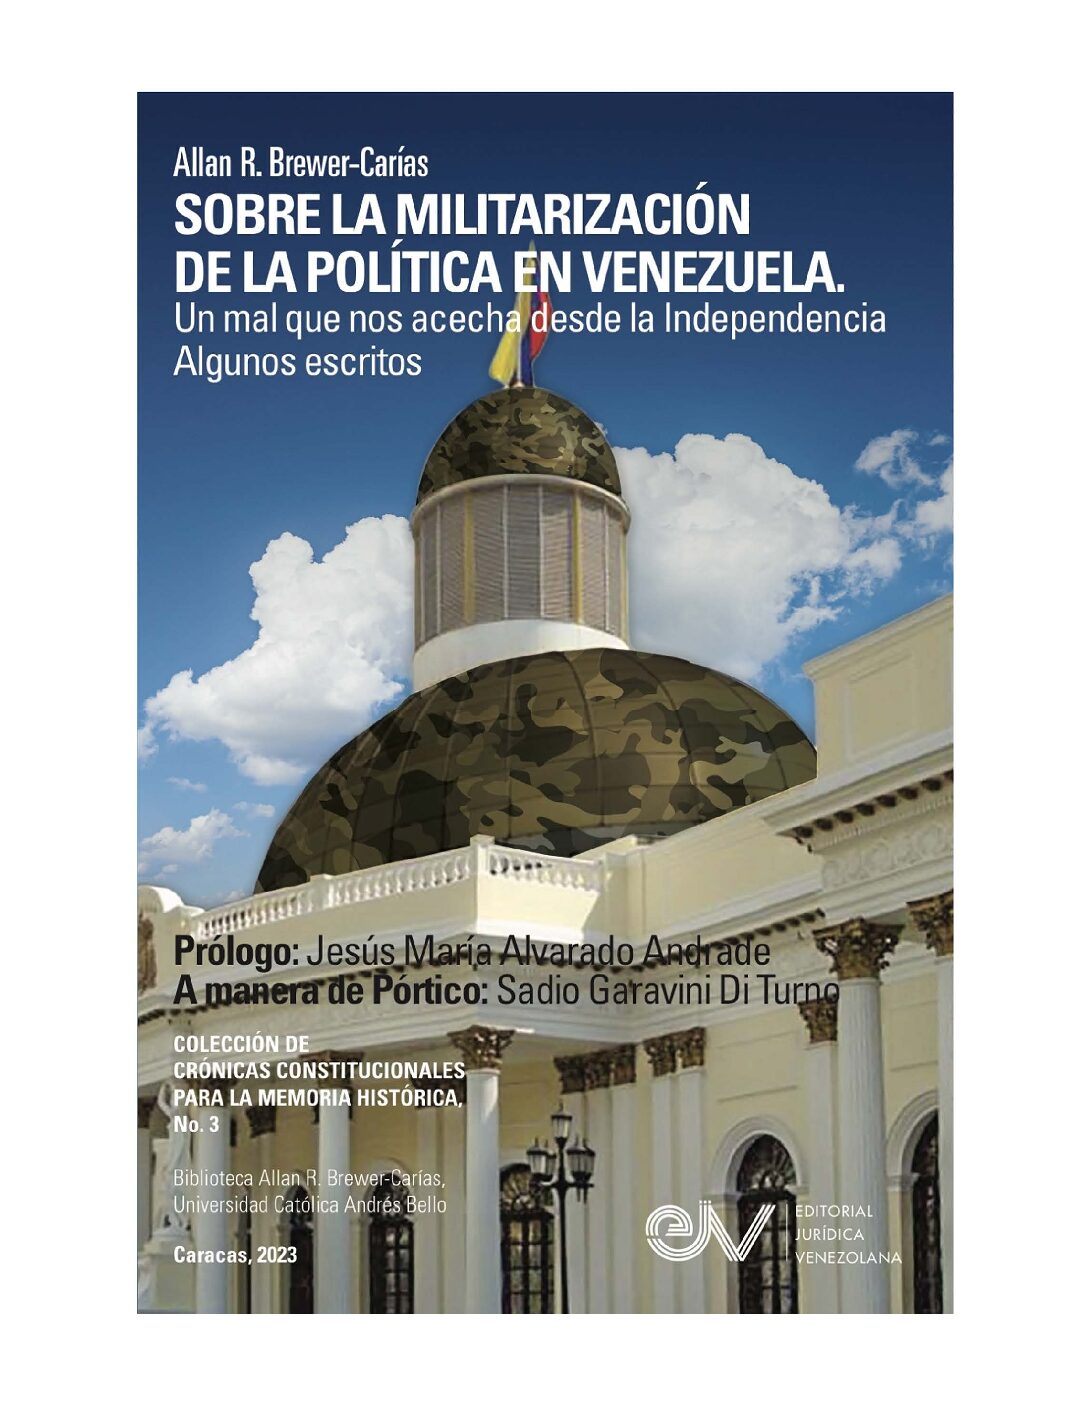 Disponible a texto completo el libro: Sobre la militarización de la política en Venezuela. Un mal que nos acecha desde la independencia. Algunos escritos. Autor: Allan R. Brewer-Carías